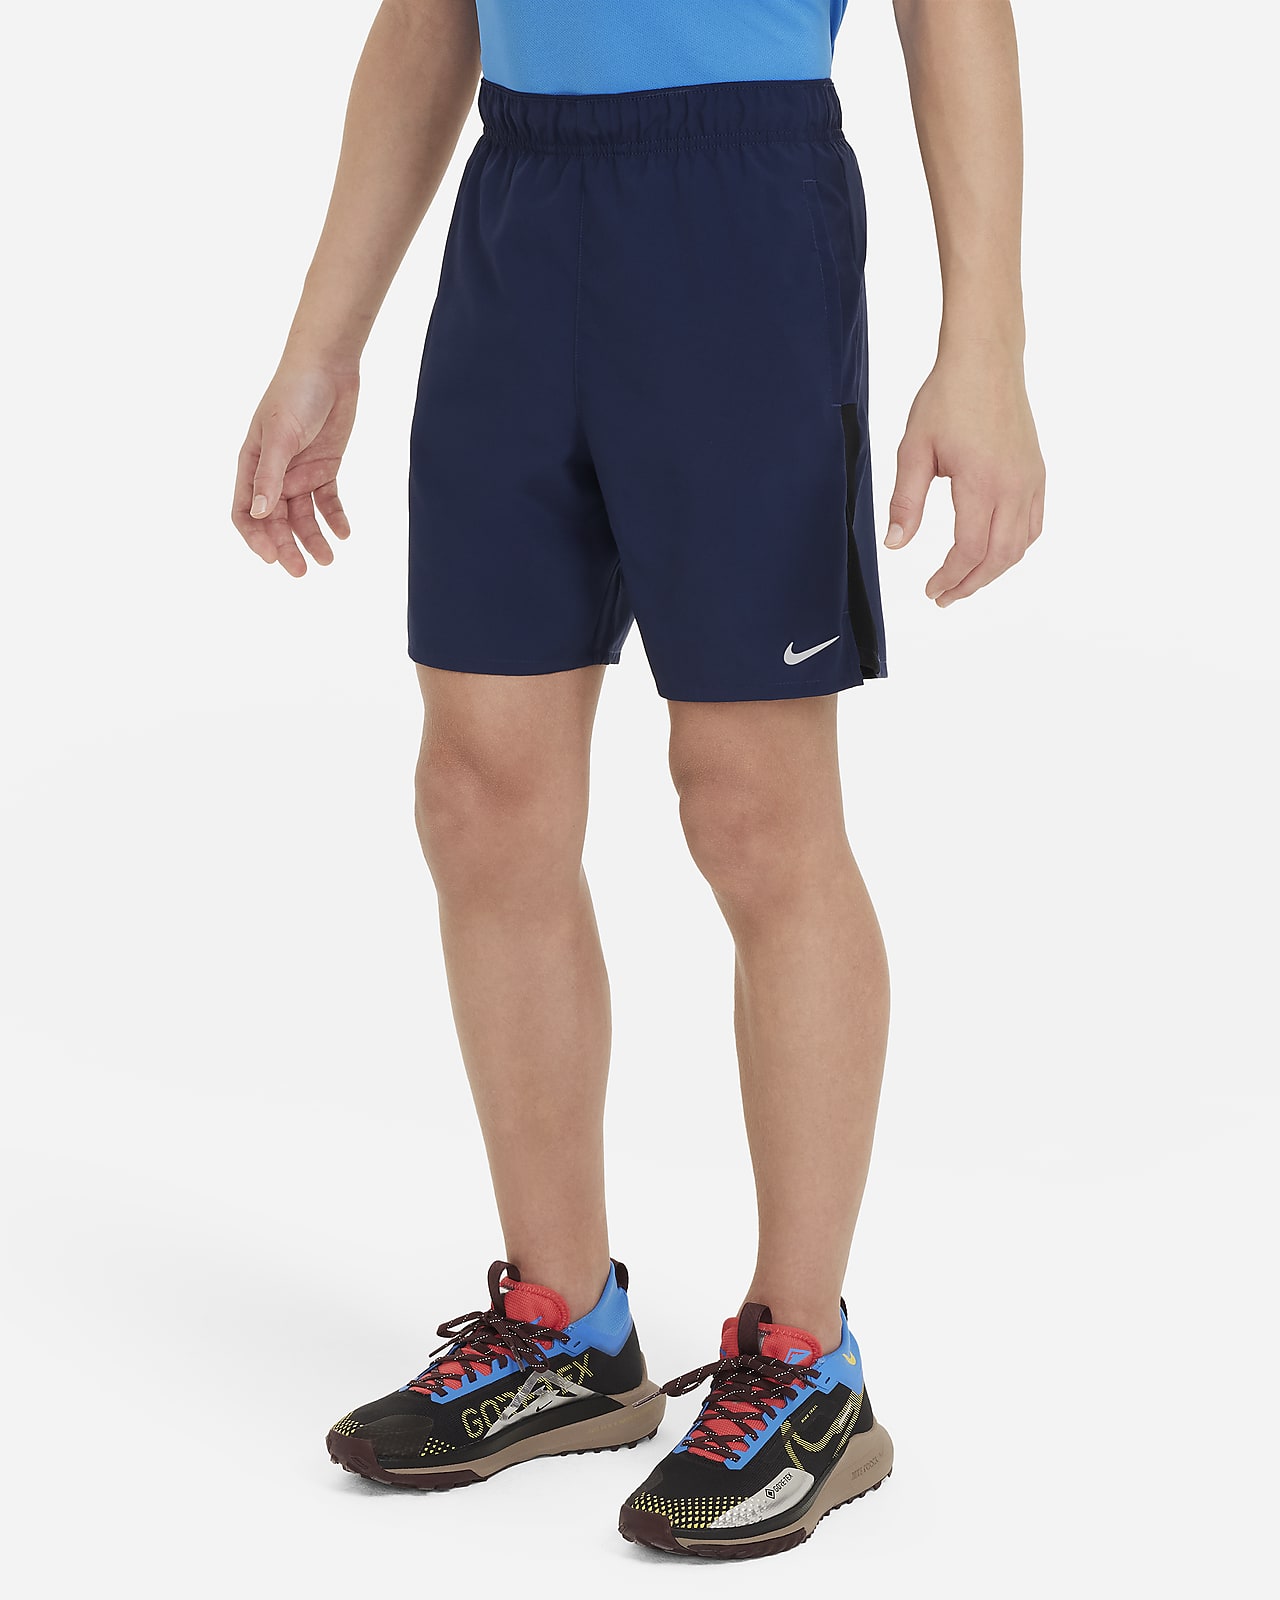 Calções de treino Nike Dri-FIT Challenger Júnior (Rapaz)